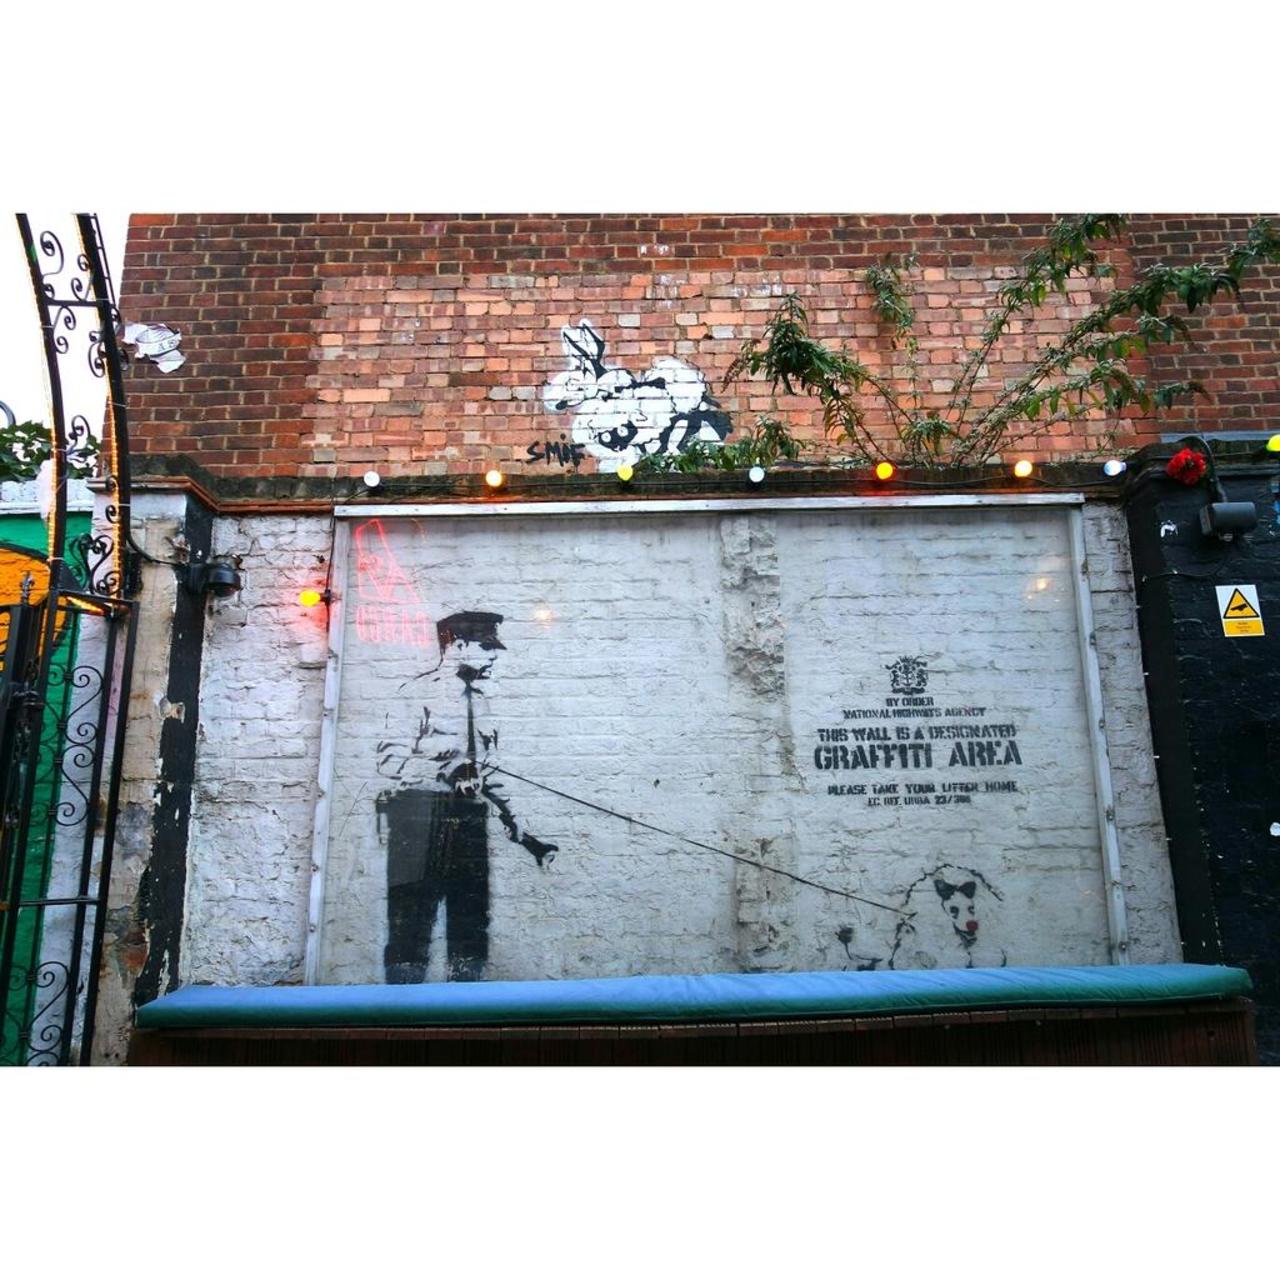 YES, it's a #Banksy! #streetart #graffiti #urbanart #art #travel #nevernottravelling #mural #london http://t.co/8DDxJBtOcV